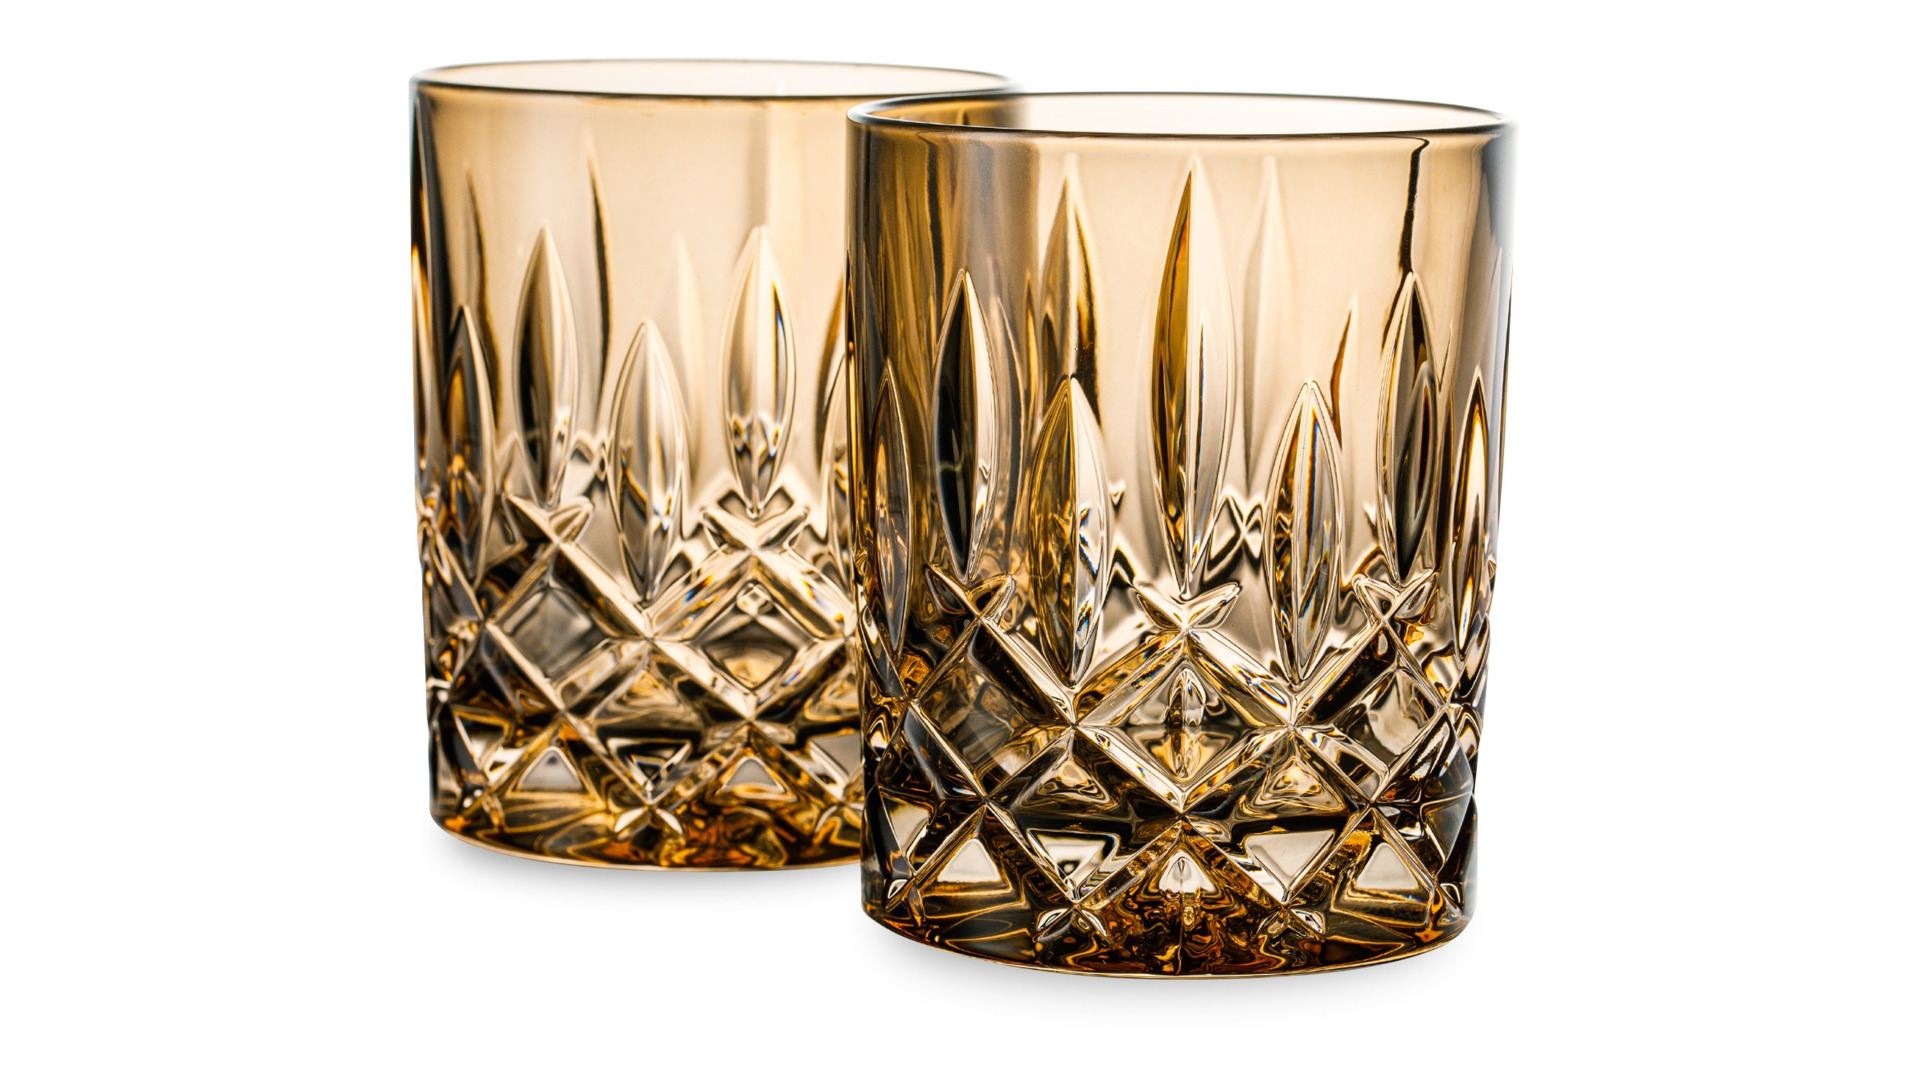 Набор стаканов для виски Nachtmann NOBLESSE COLORS 295 мл, 2 шт, стекло хрустальное, бронзовый, п/к